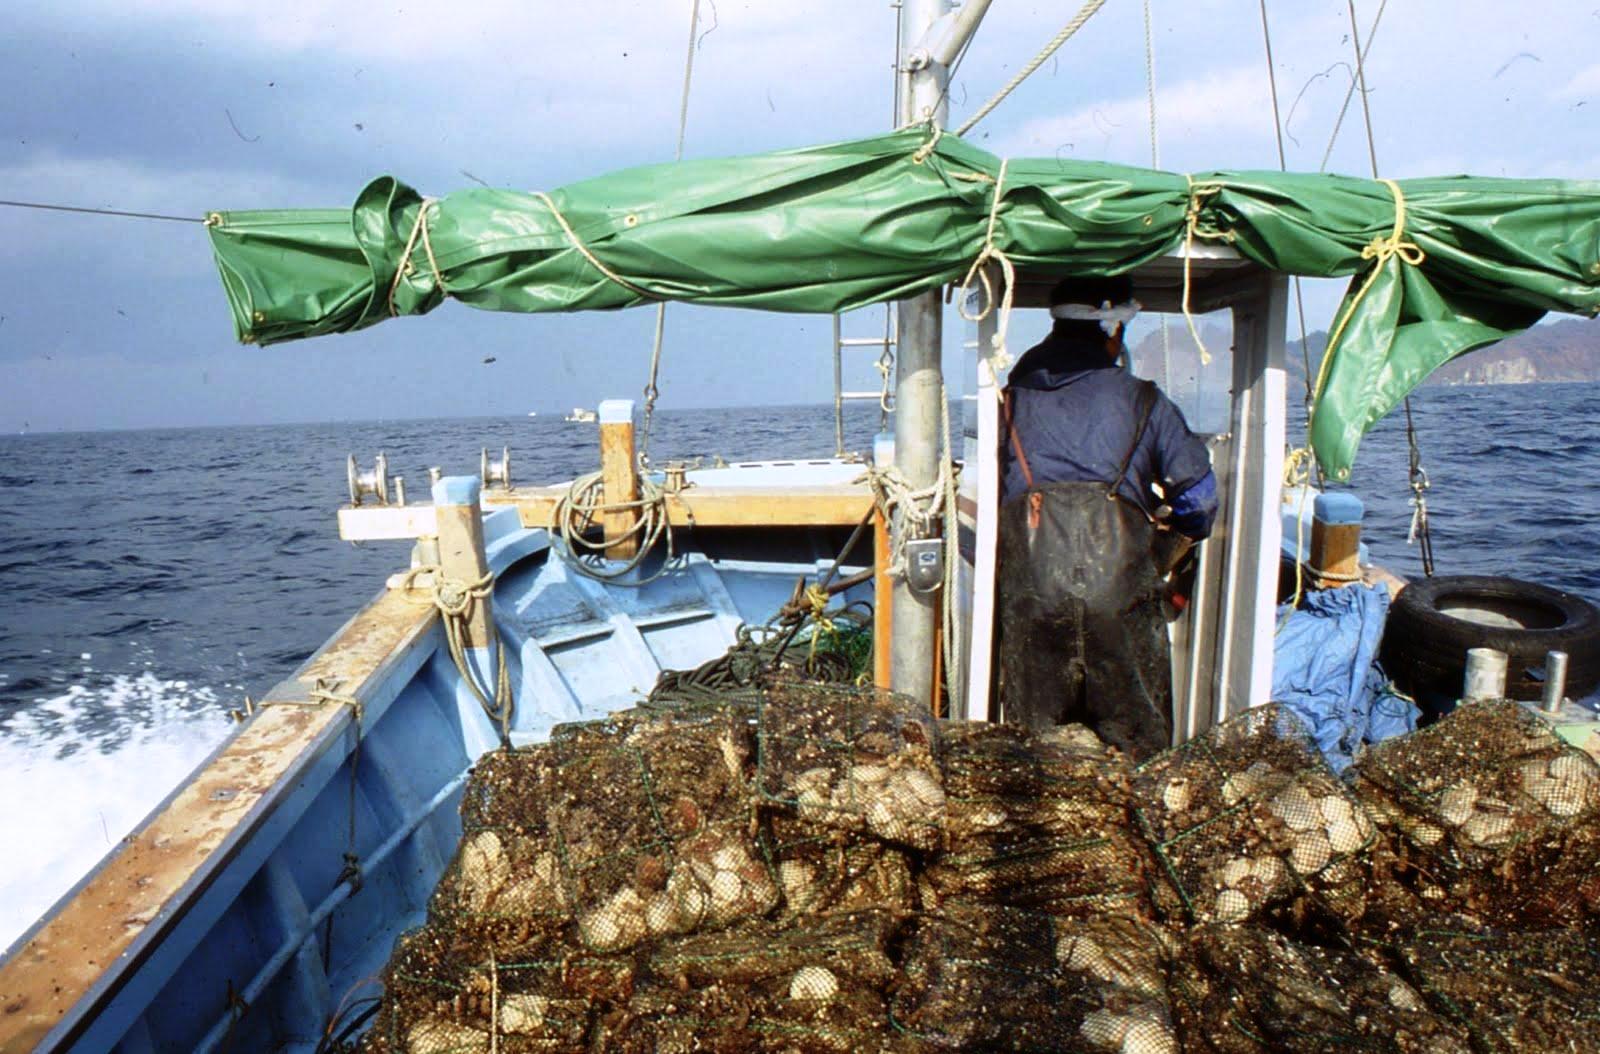 « Il faut dire non aux compagnies de pêche frauduleuses » déclare Greenpeace